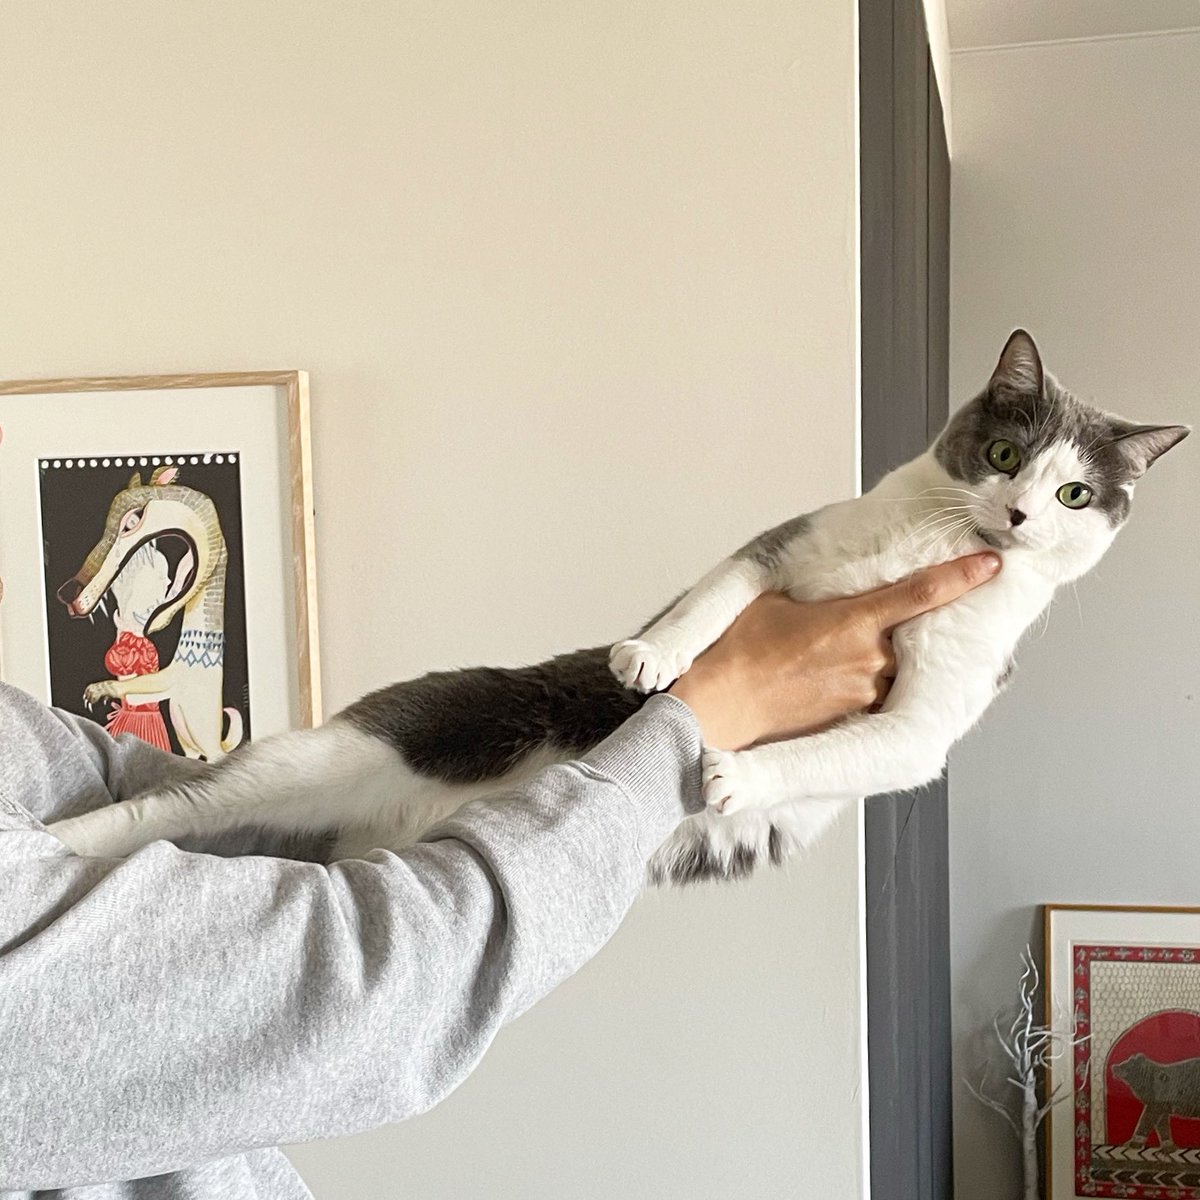 抱っこが苦手な猫さんの連休恒例 もはやアートのような 抱っこ拒否 力強くて趣がある やりすぎると後ろの絵のようになる Togetter